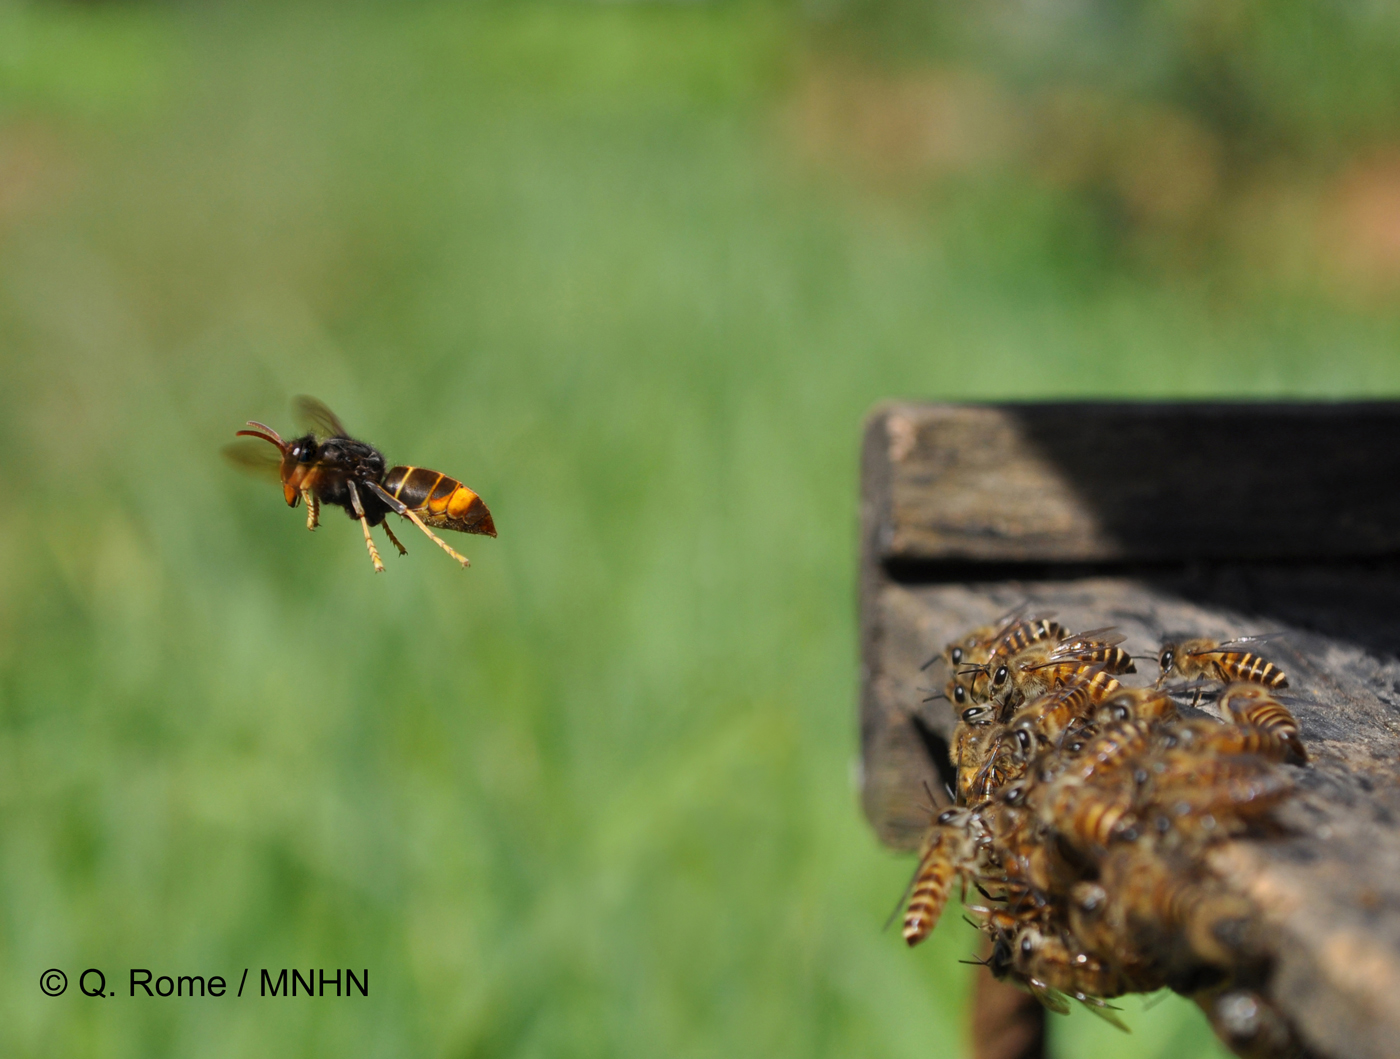 Vol stationnaire devant une ruche